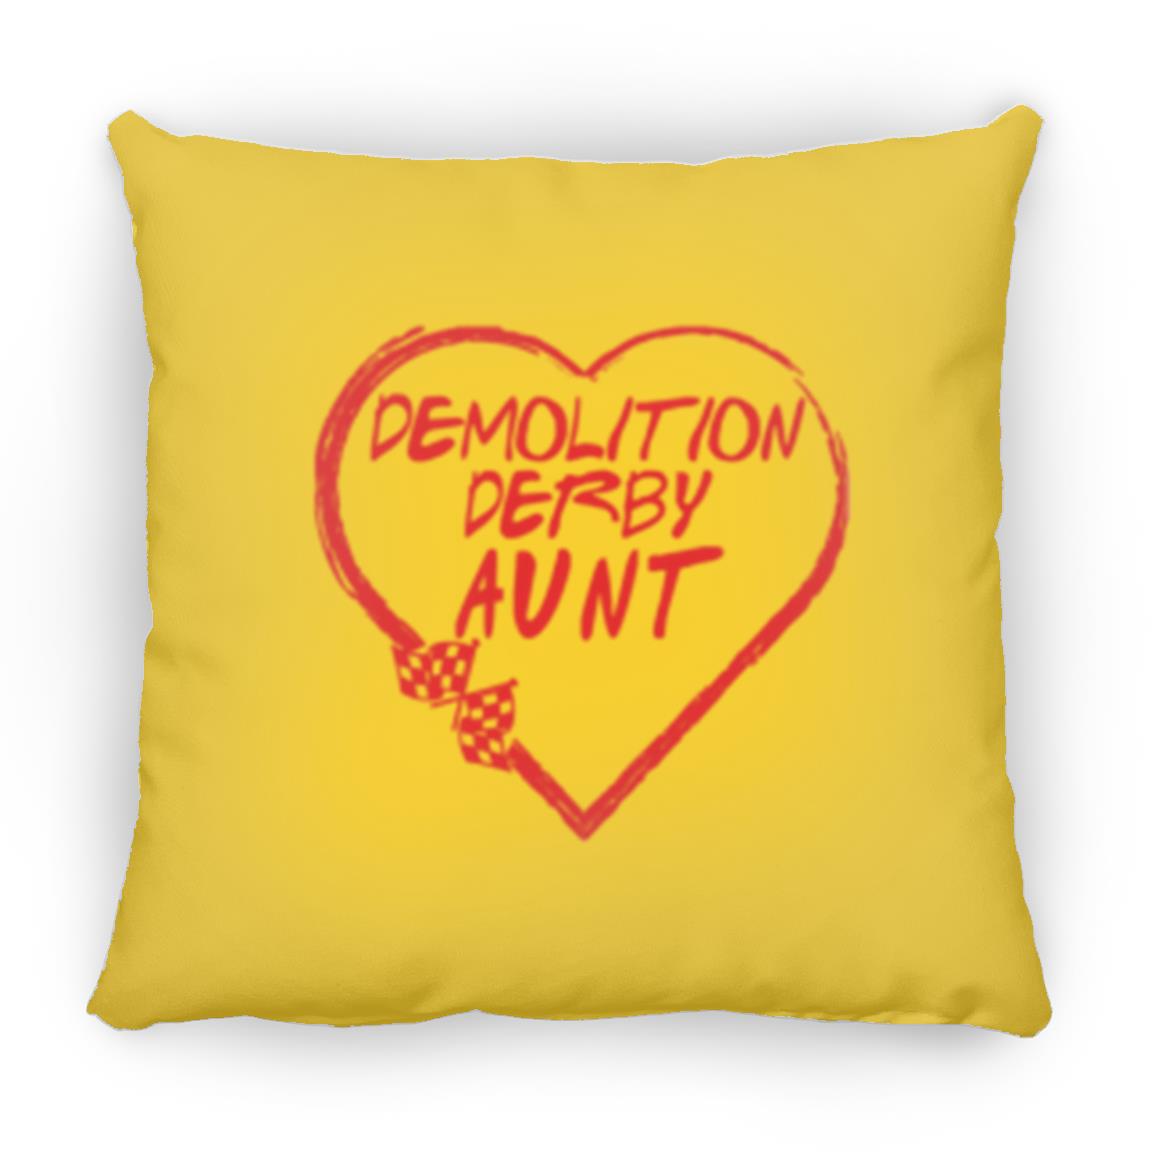 Demolition Derby Aunt Heart Large Square Pillow